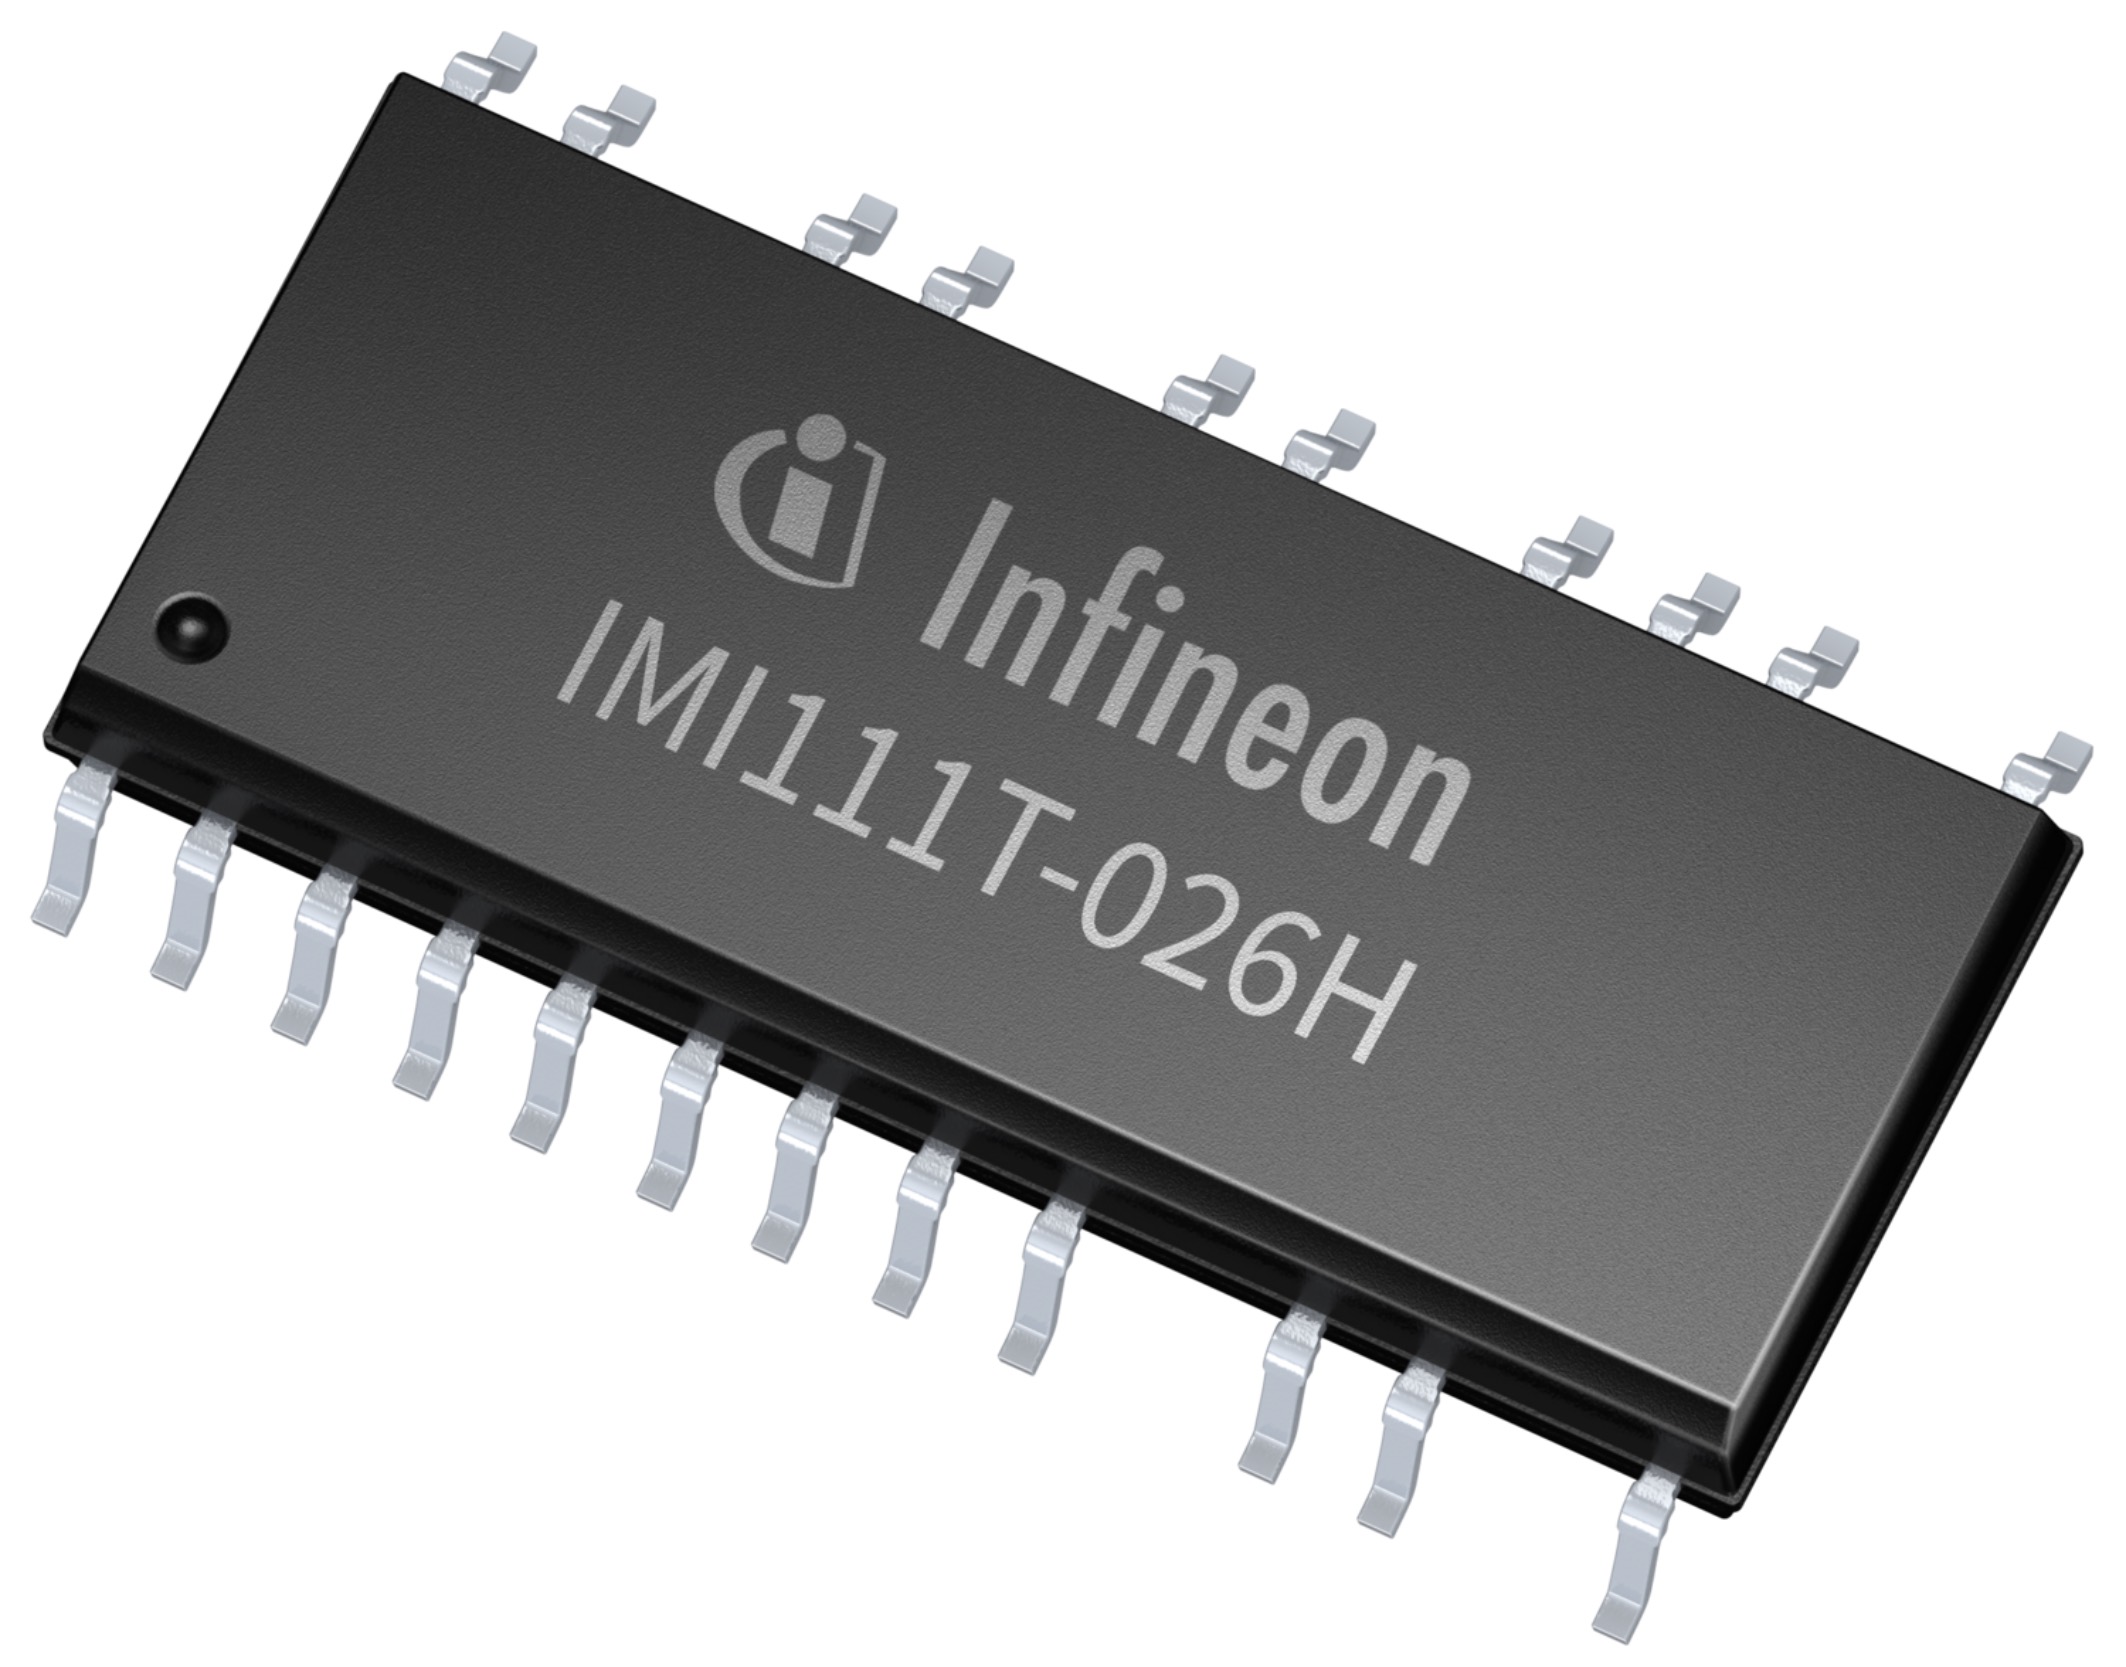 英飞凌科技全新 iMOTION IMI110 系列智能功率模块中的 IMI111T-026H 型号产品.jpg